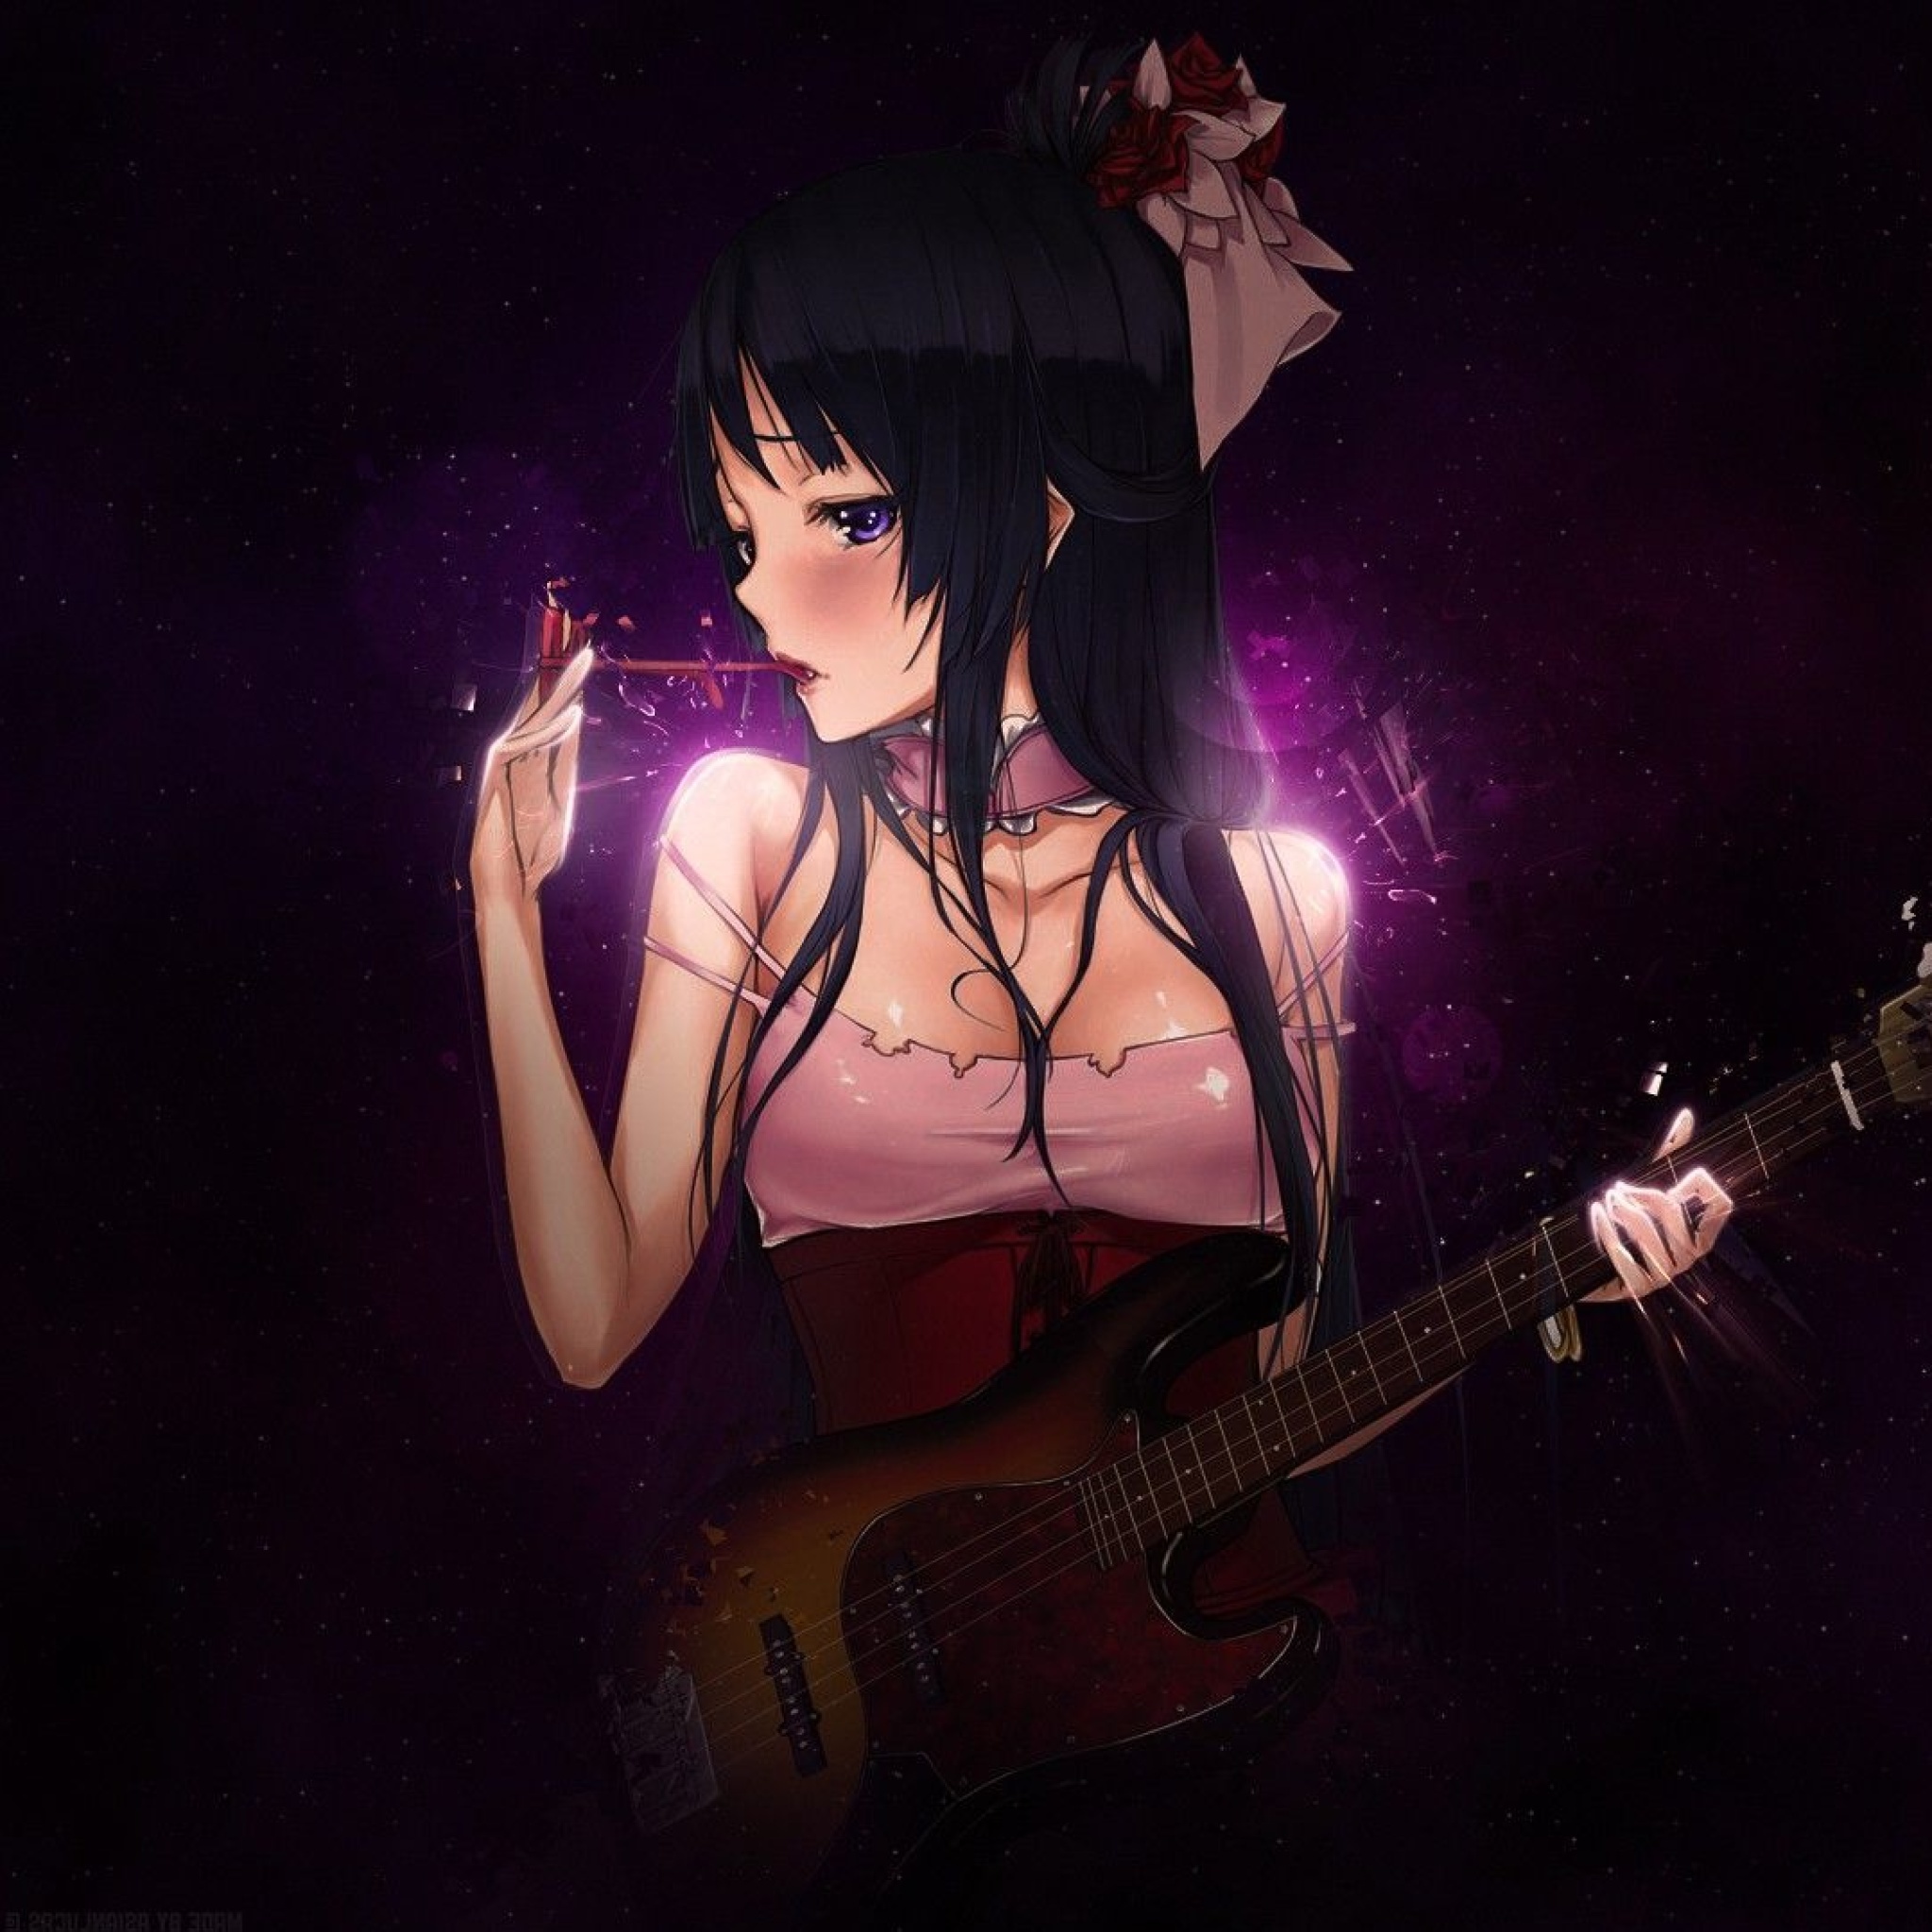 Das Anime Girl with Guitar Wallpaper 2048x2048